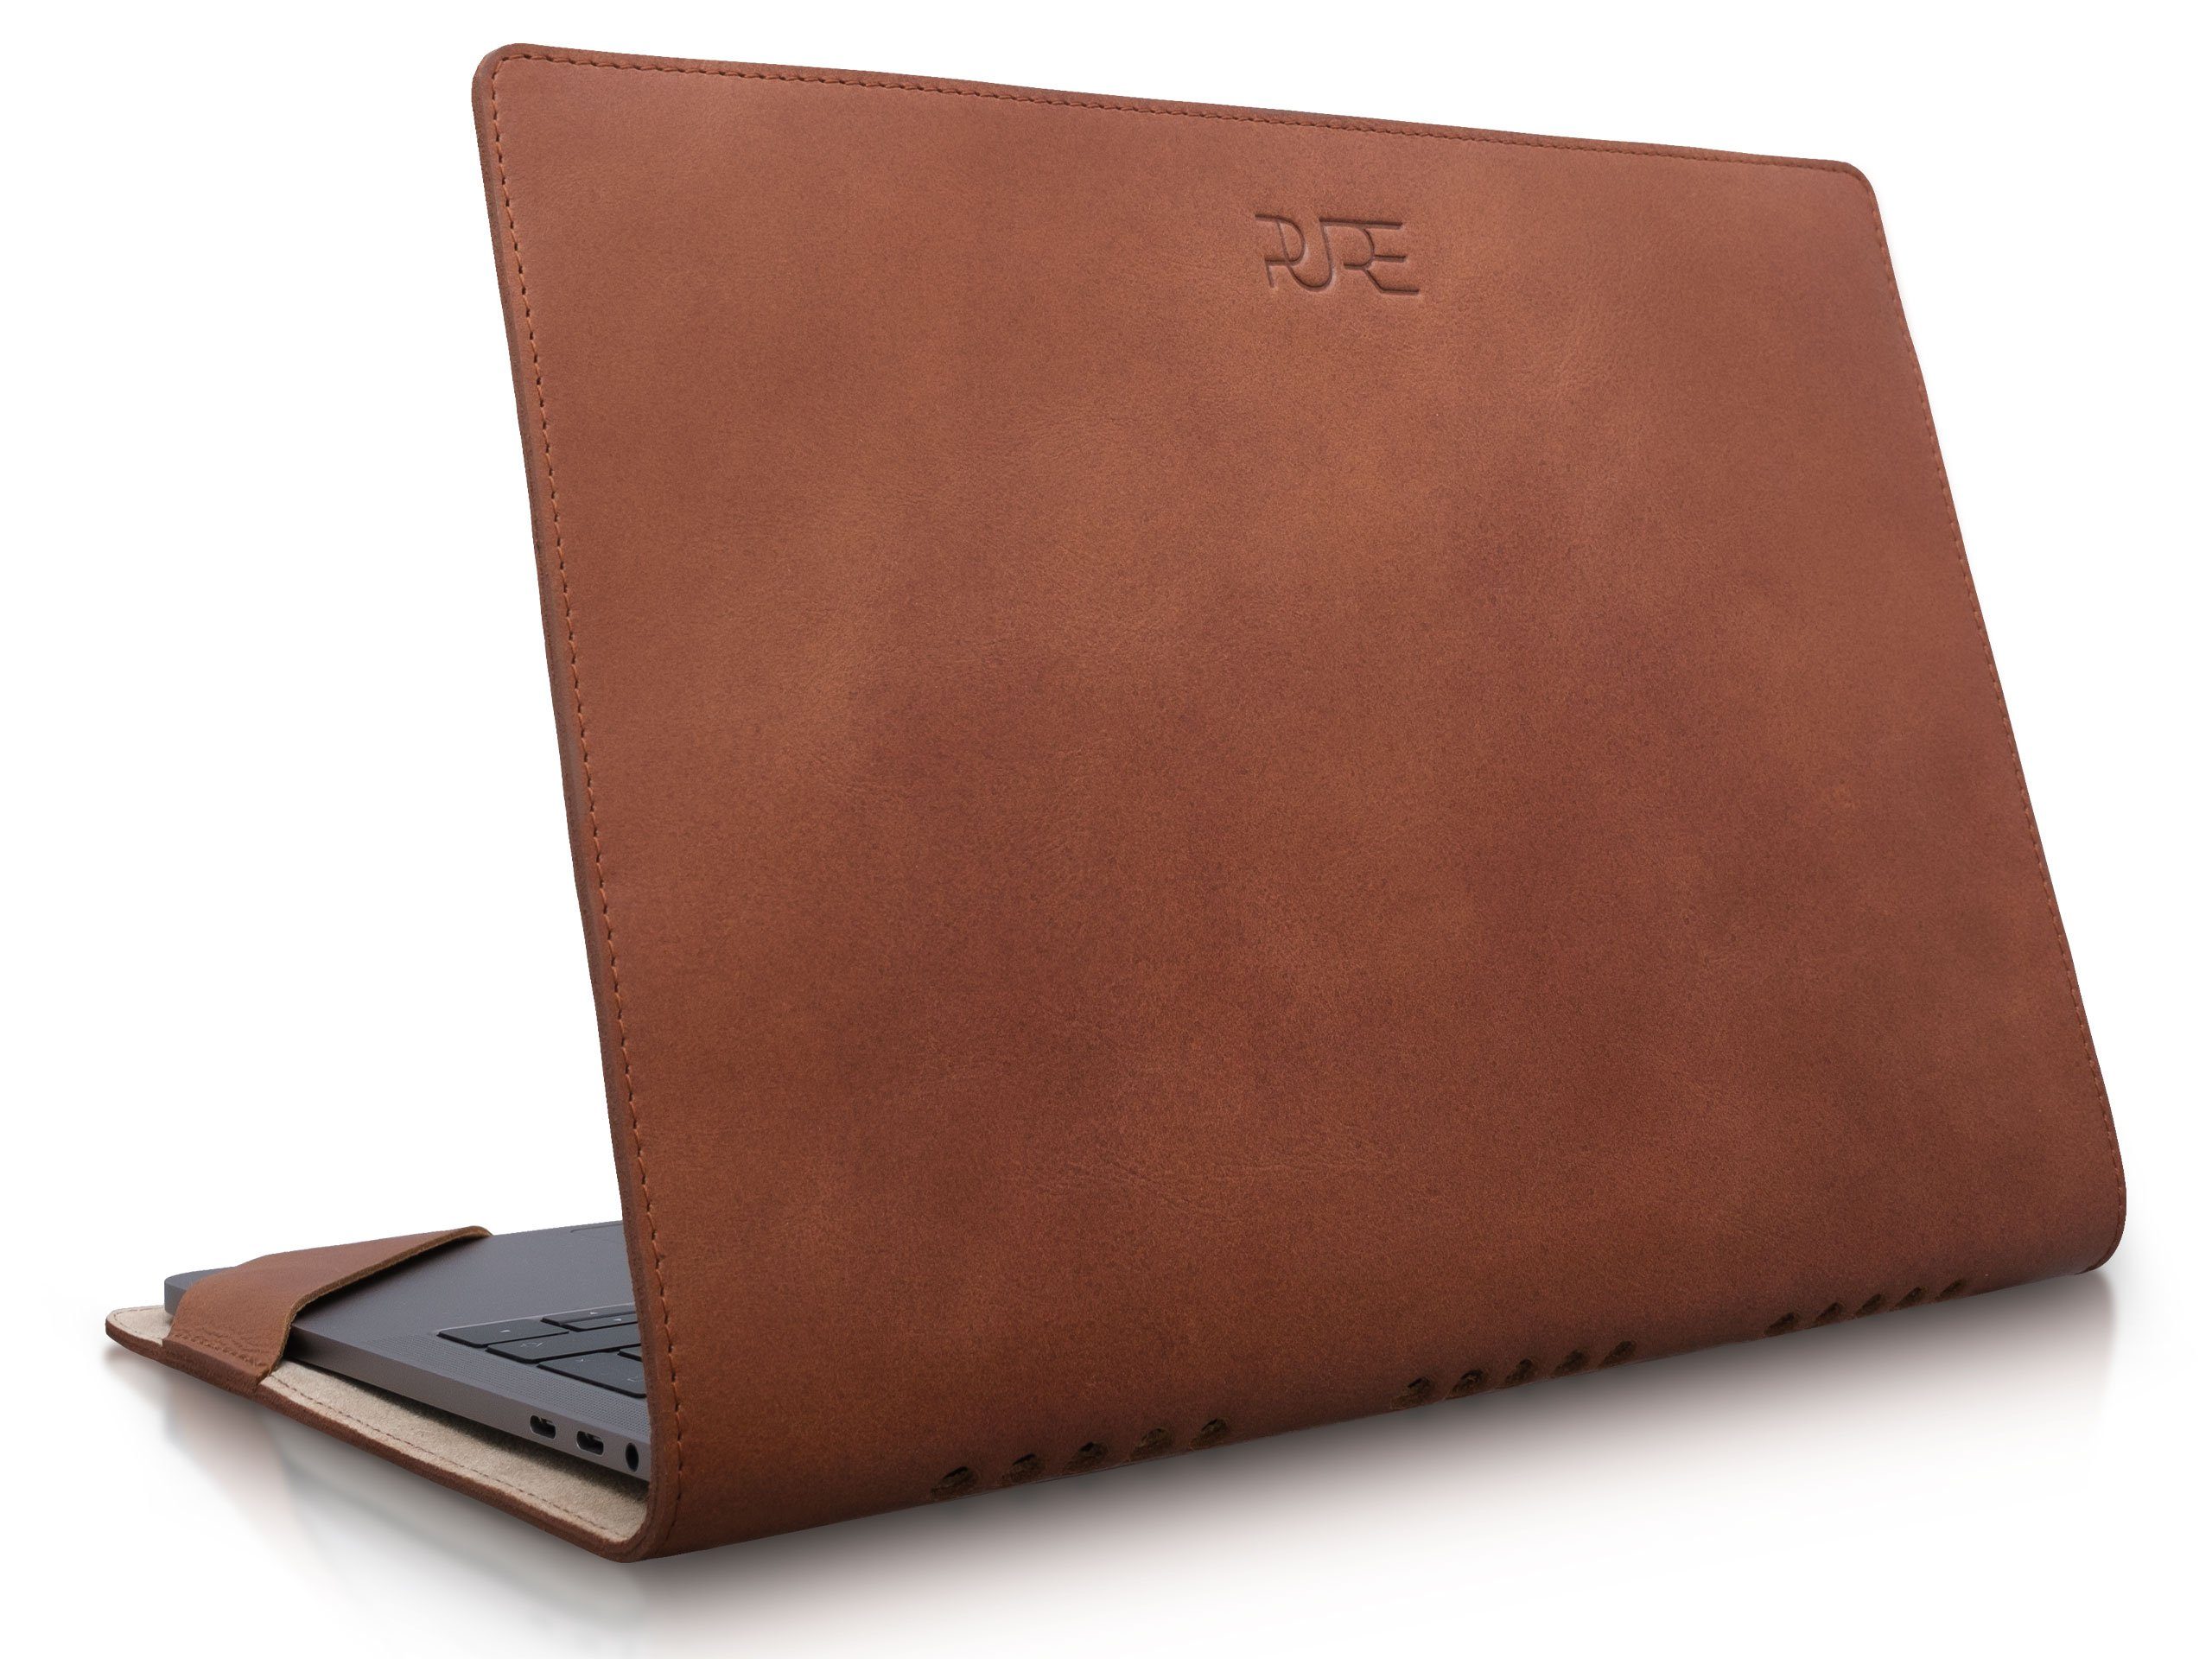 PURE Leather Studio Laptop-Hülle 13" MacBook Lederhülle ATRIA 33,8 cm (13,3 Zoll), Laptop-Hülle für Apple MacBook Air/Pro 13 Zoll Sleeve Cover Case